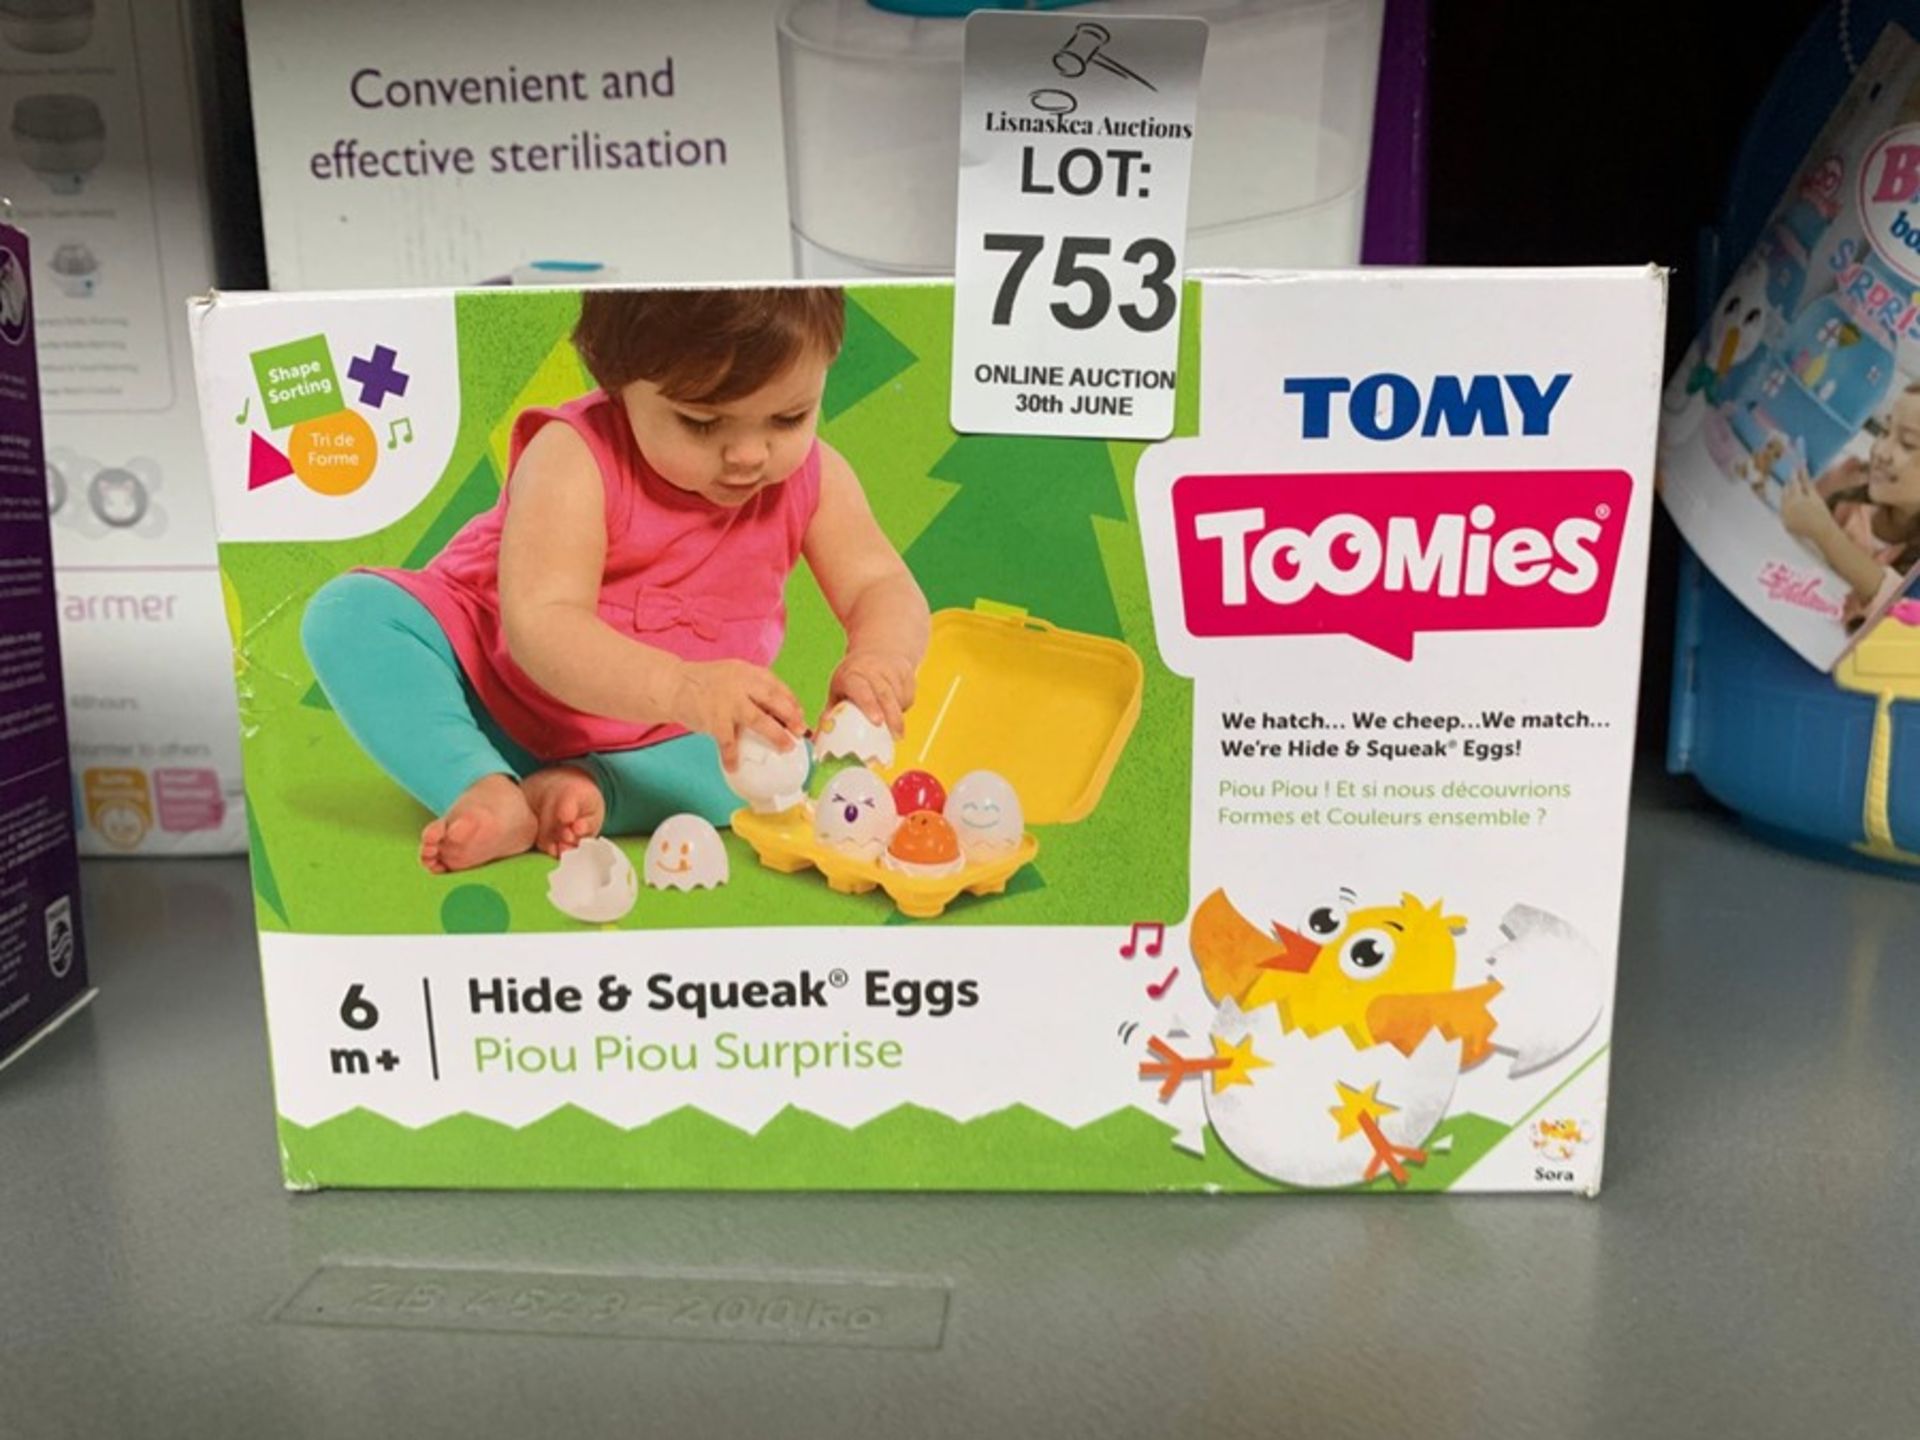 TOMY TOOMIES HIDE & SQUEAK EGGS